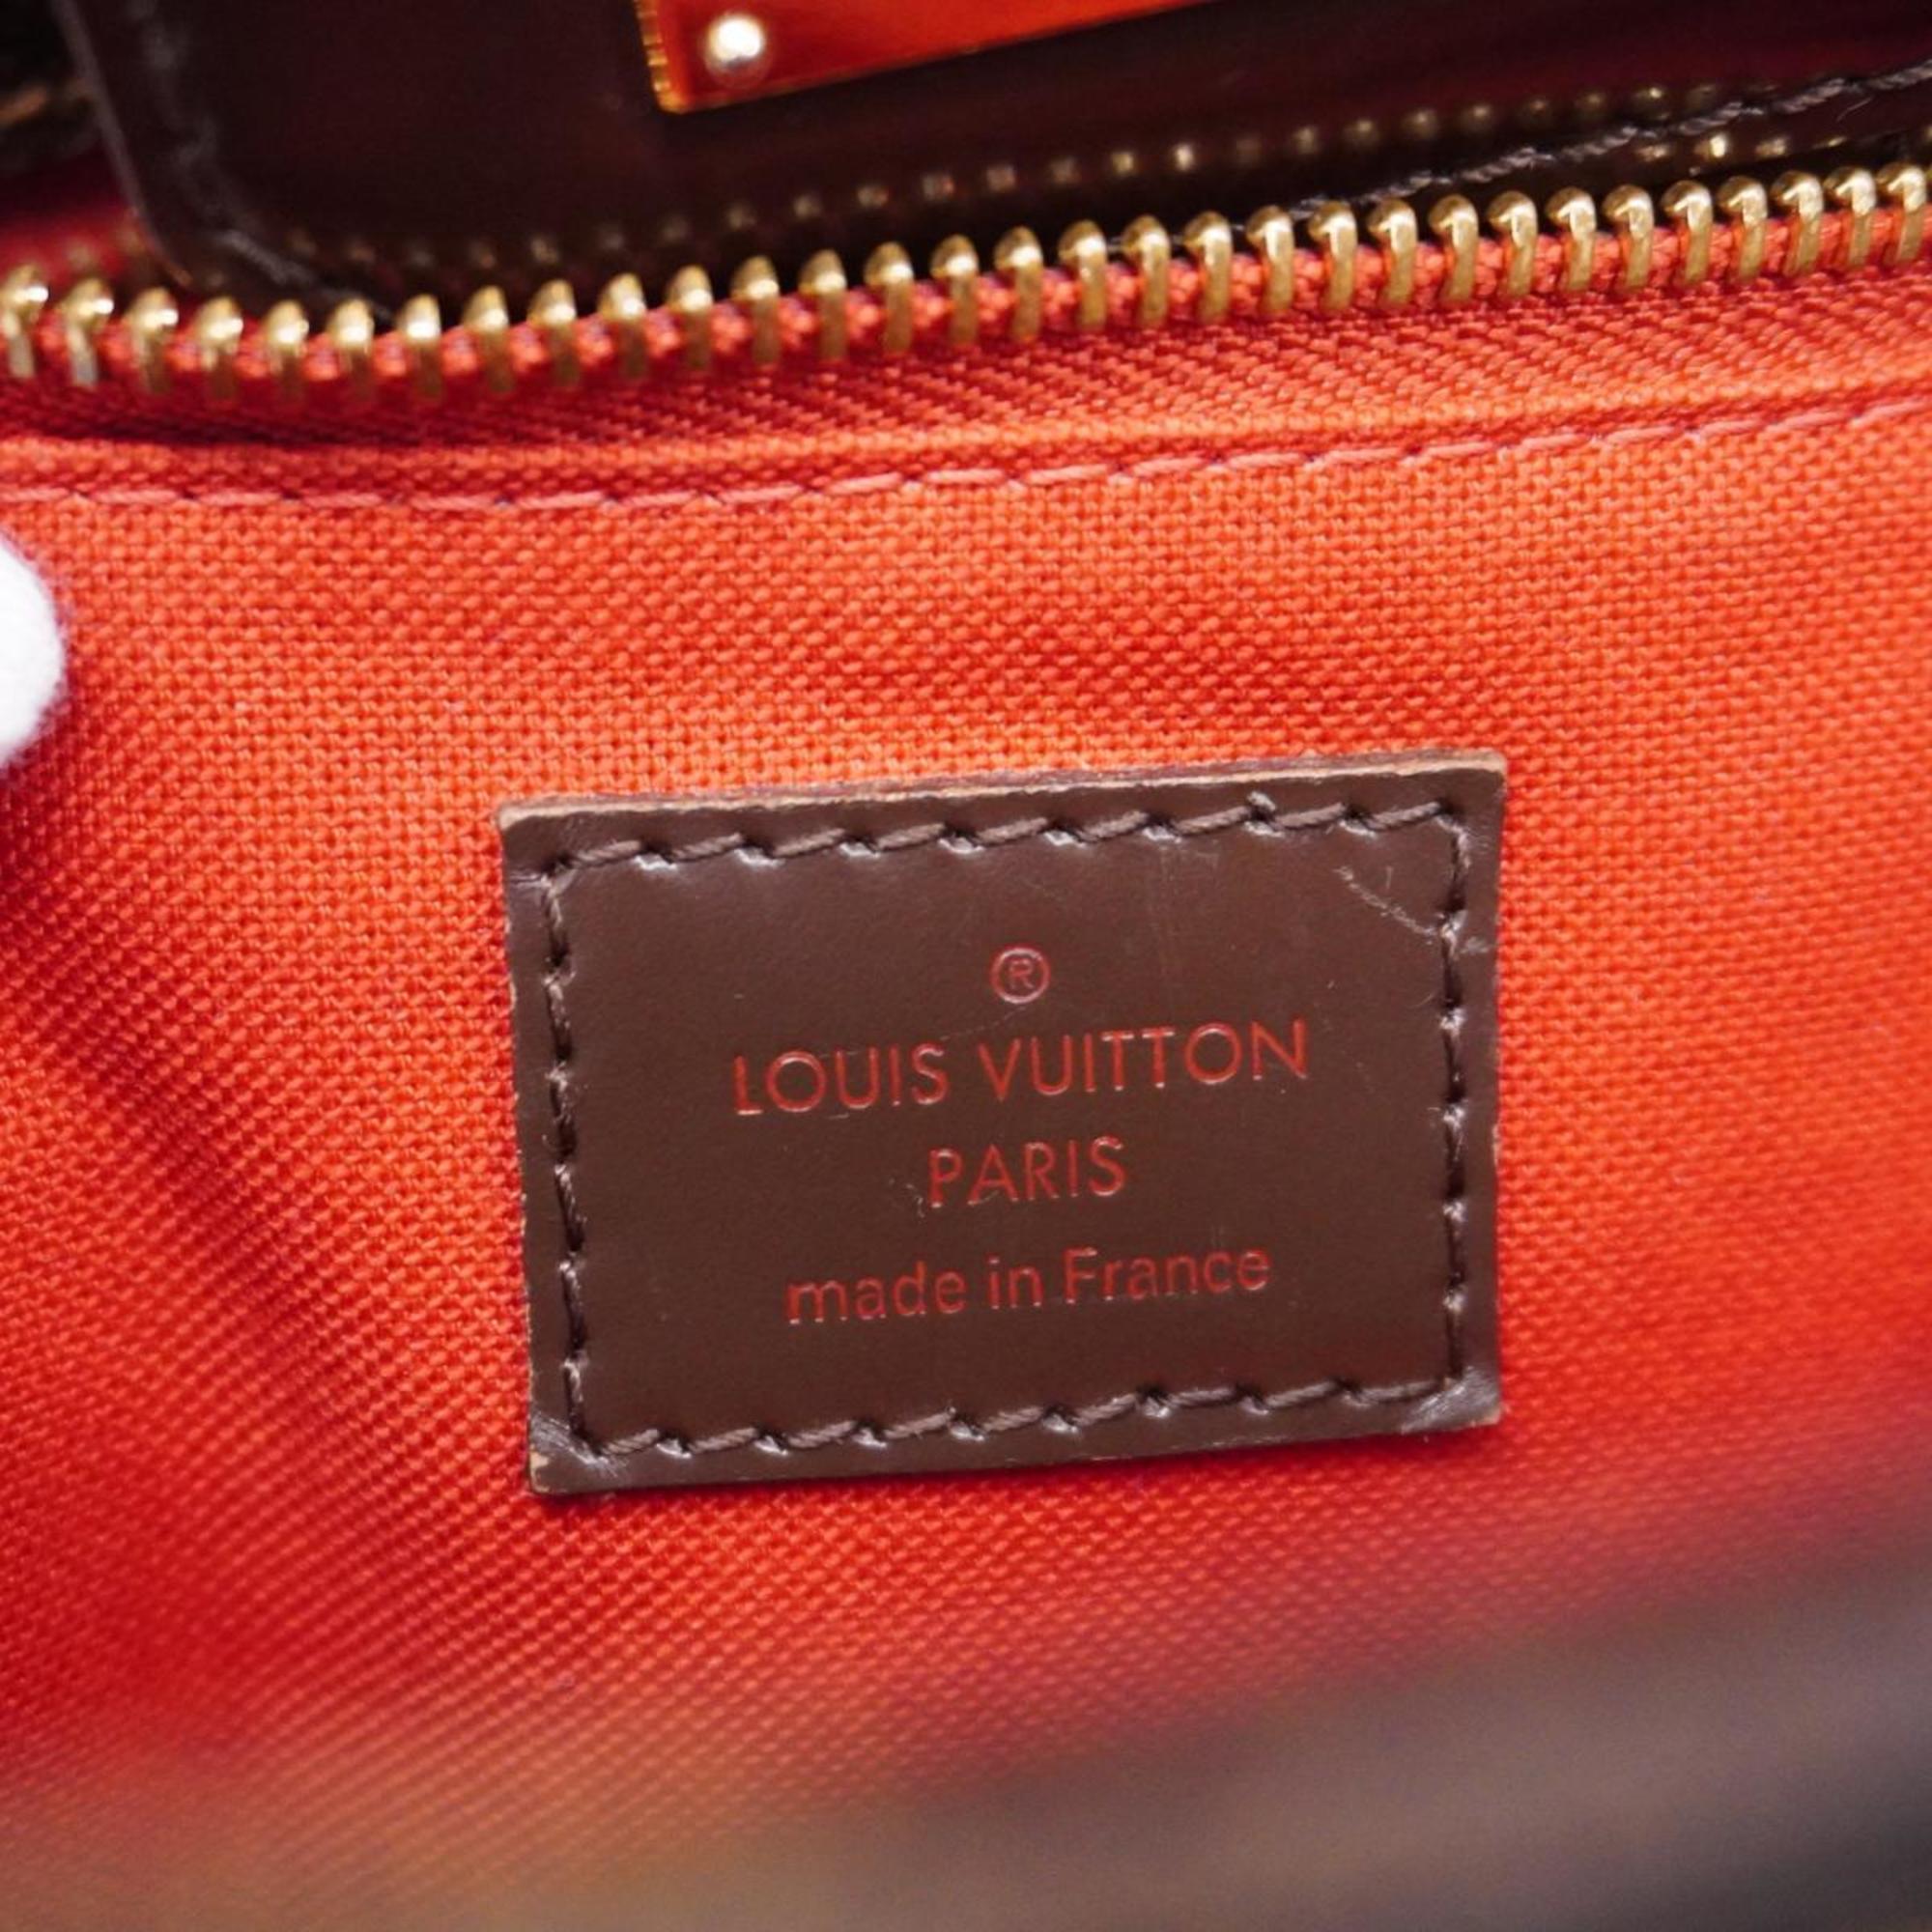 ルイ・ヴィトン(Louis Vuitton) ルイ・ヴィトン ハンドバッグ ダミエ カバローズベリー N41177 エベヌレディース